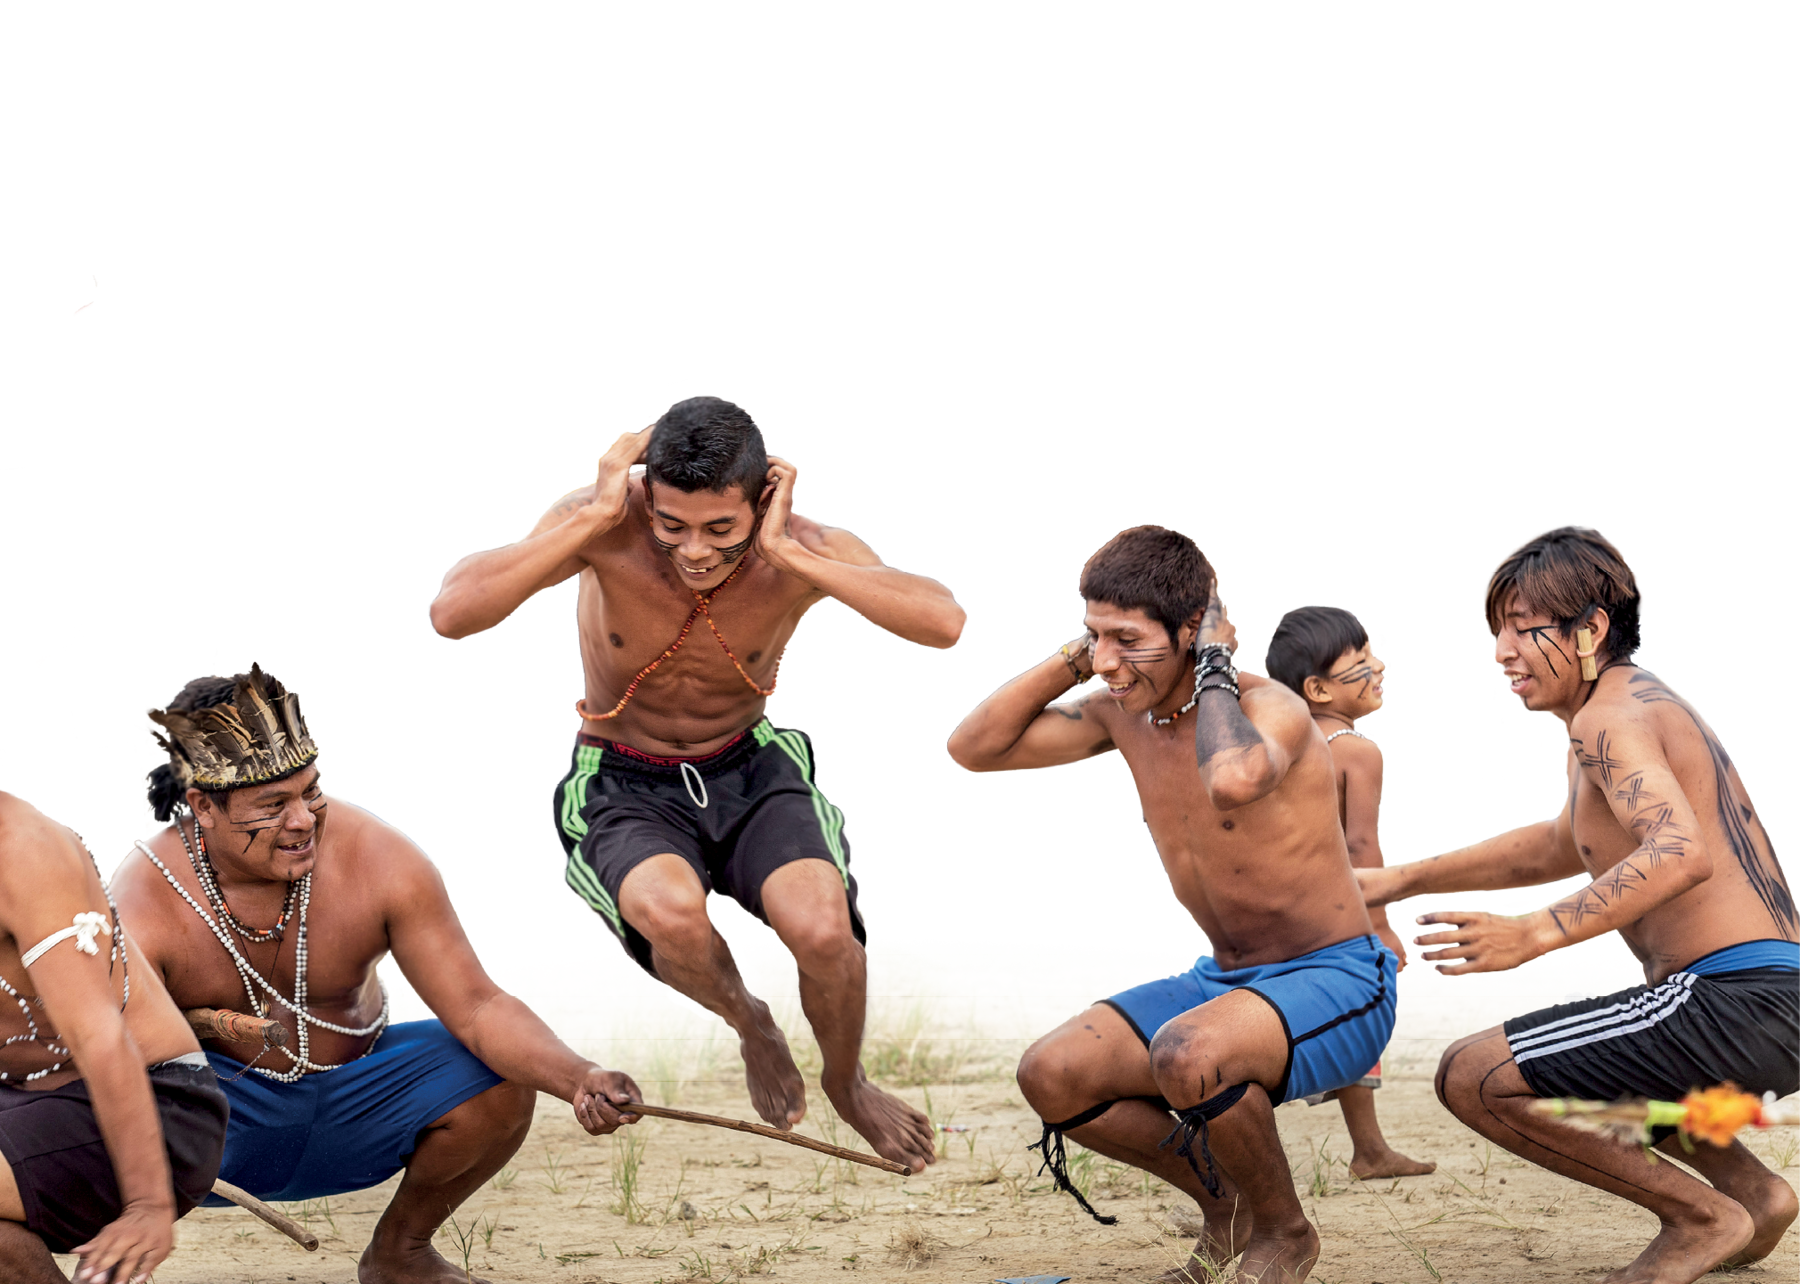 Fotografia. Cinco rapazes indígenas de bermuda e com pinturas faciais e colares, estão agachados e com as mãos sobre a nuca. Um deles salta, enquanto um outro, à direita, movimenta uma haste, próxima ao chão. Eles estão sorrindo.